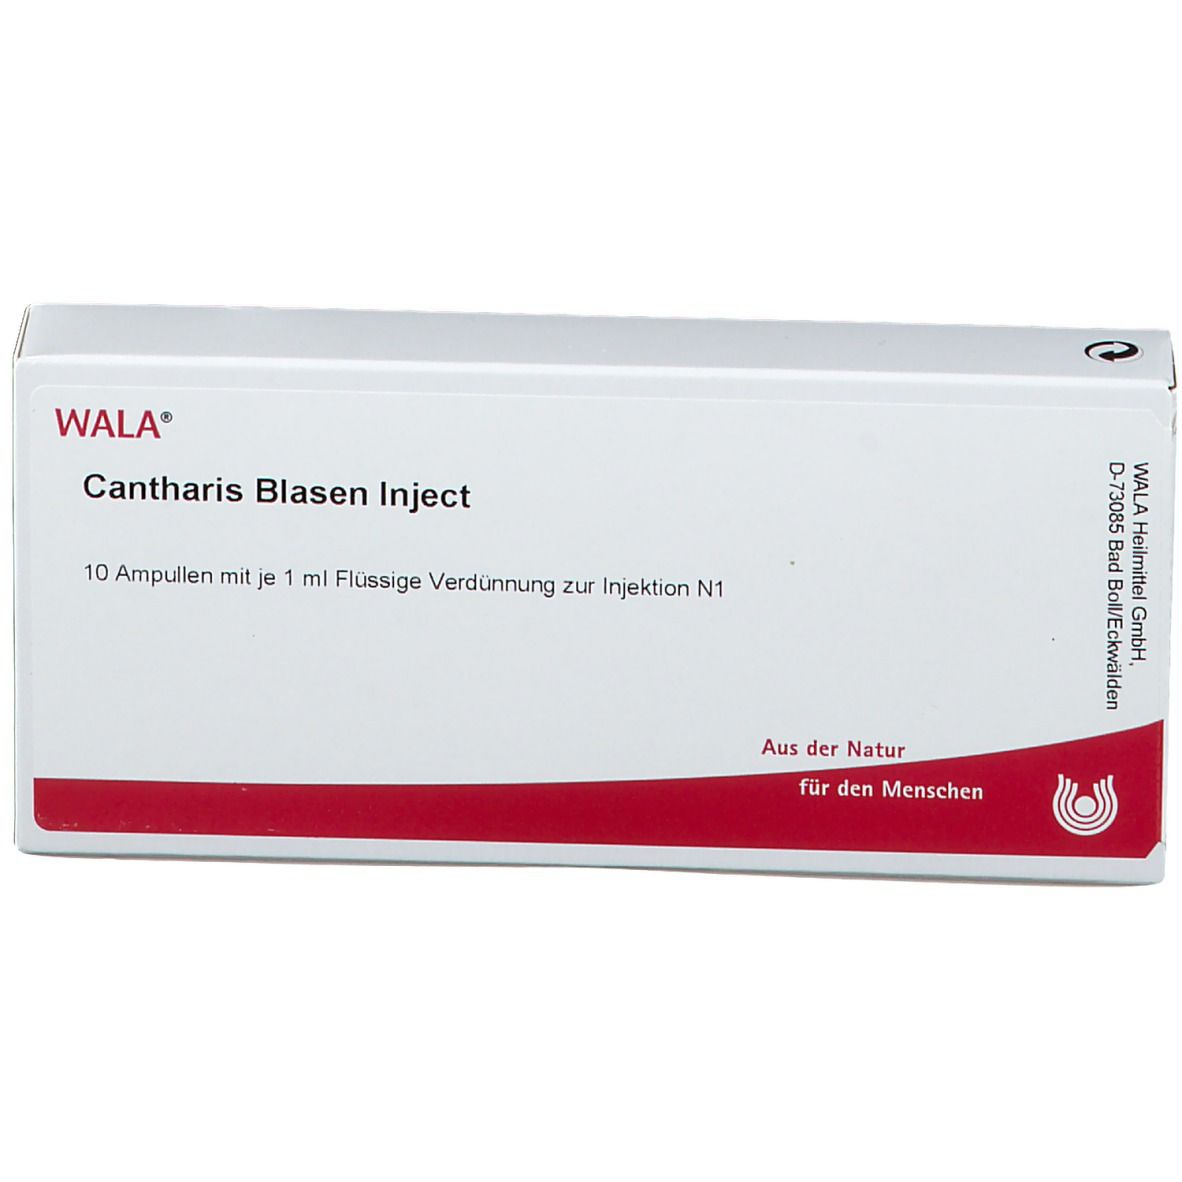 WALA® Cantharis Blasen Inject Amp.